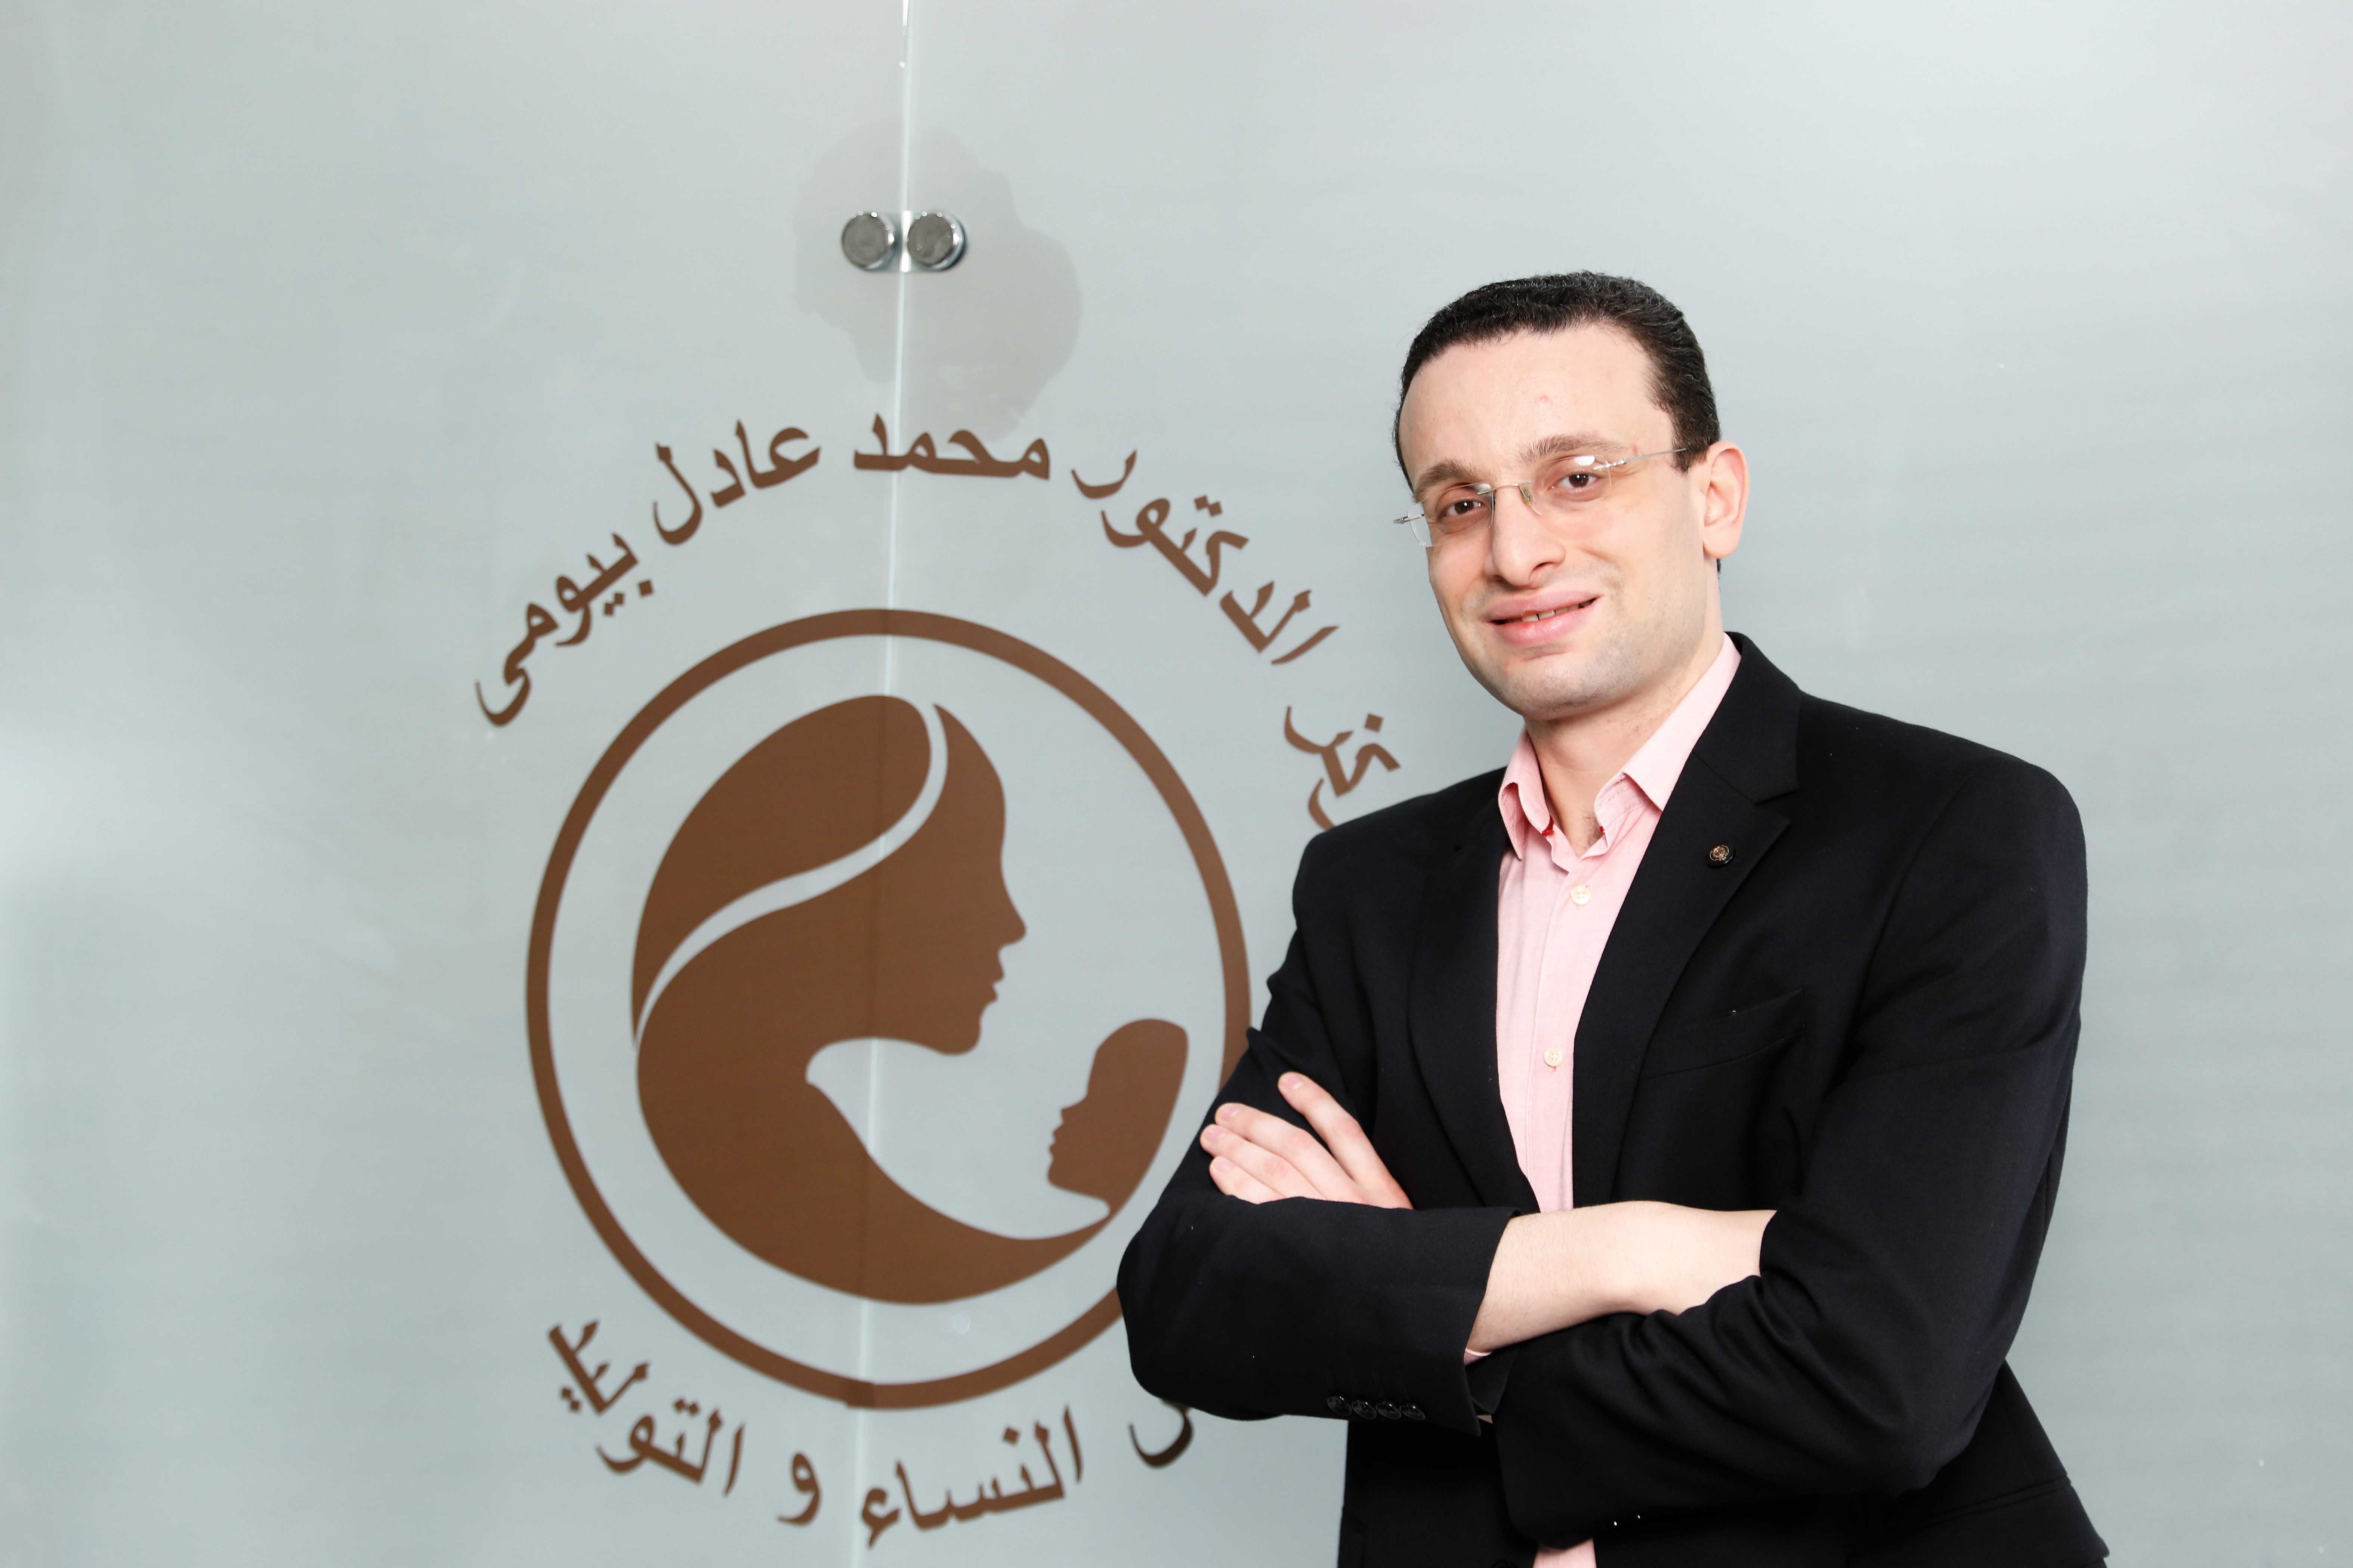 Dr. Mohamed Adel Bayoumy